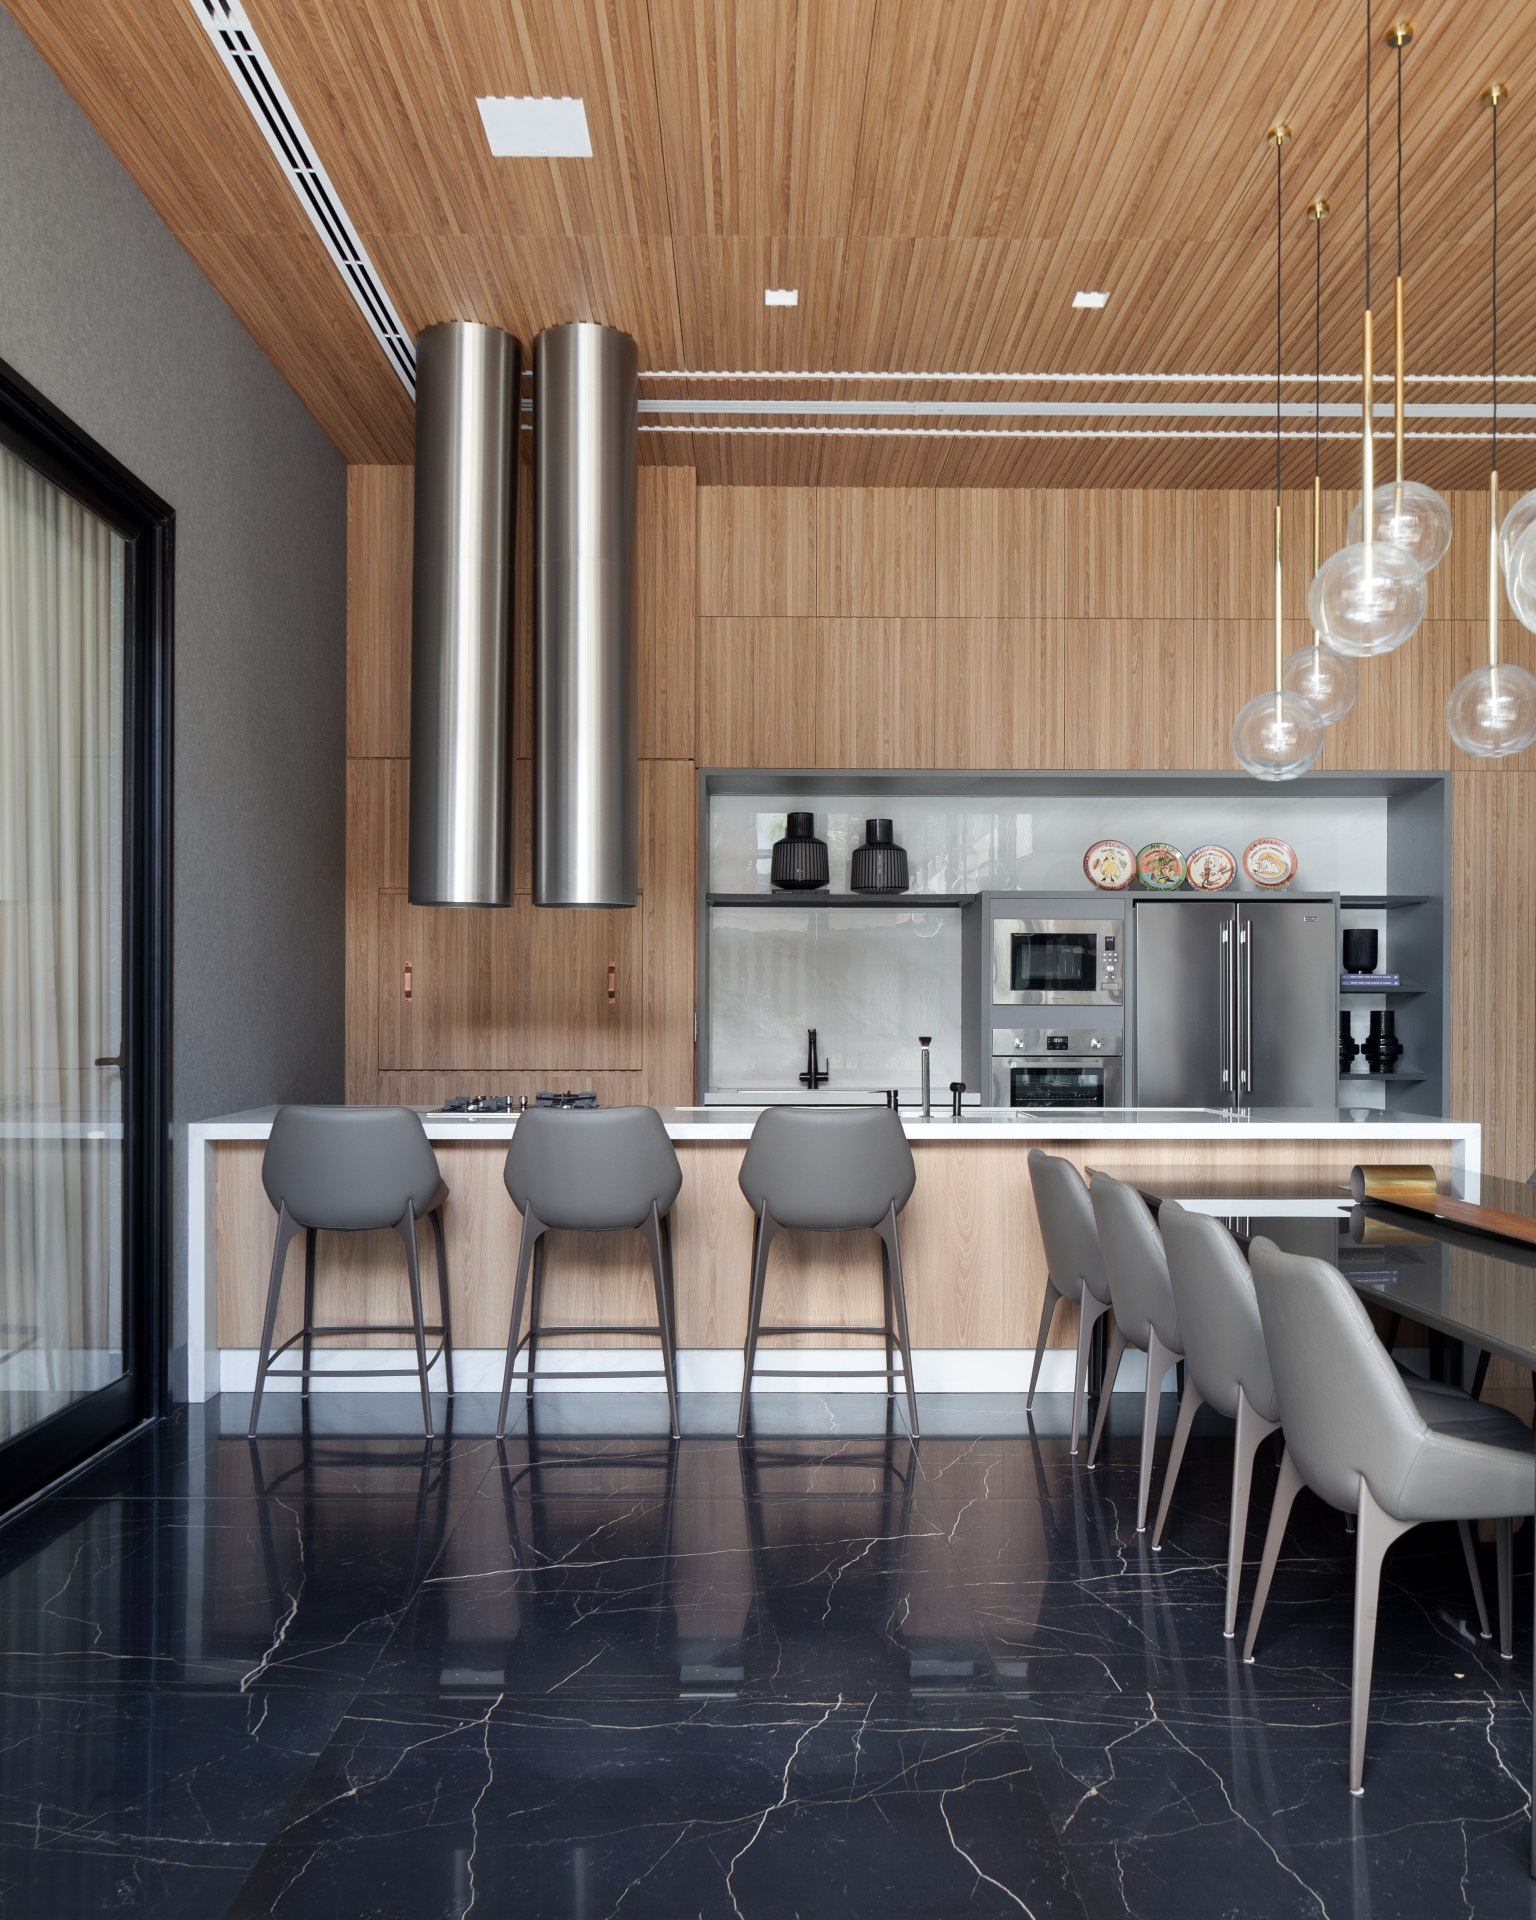 Cozinha moderna com piso que reproduz mármore preto